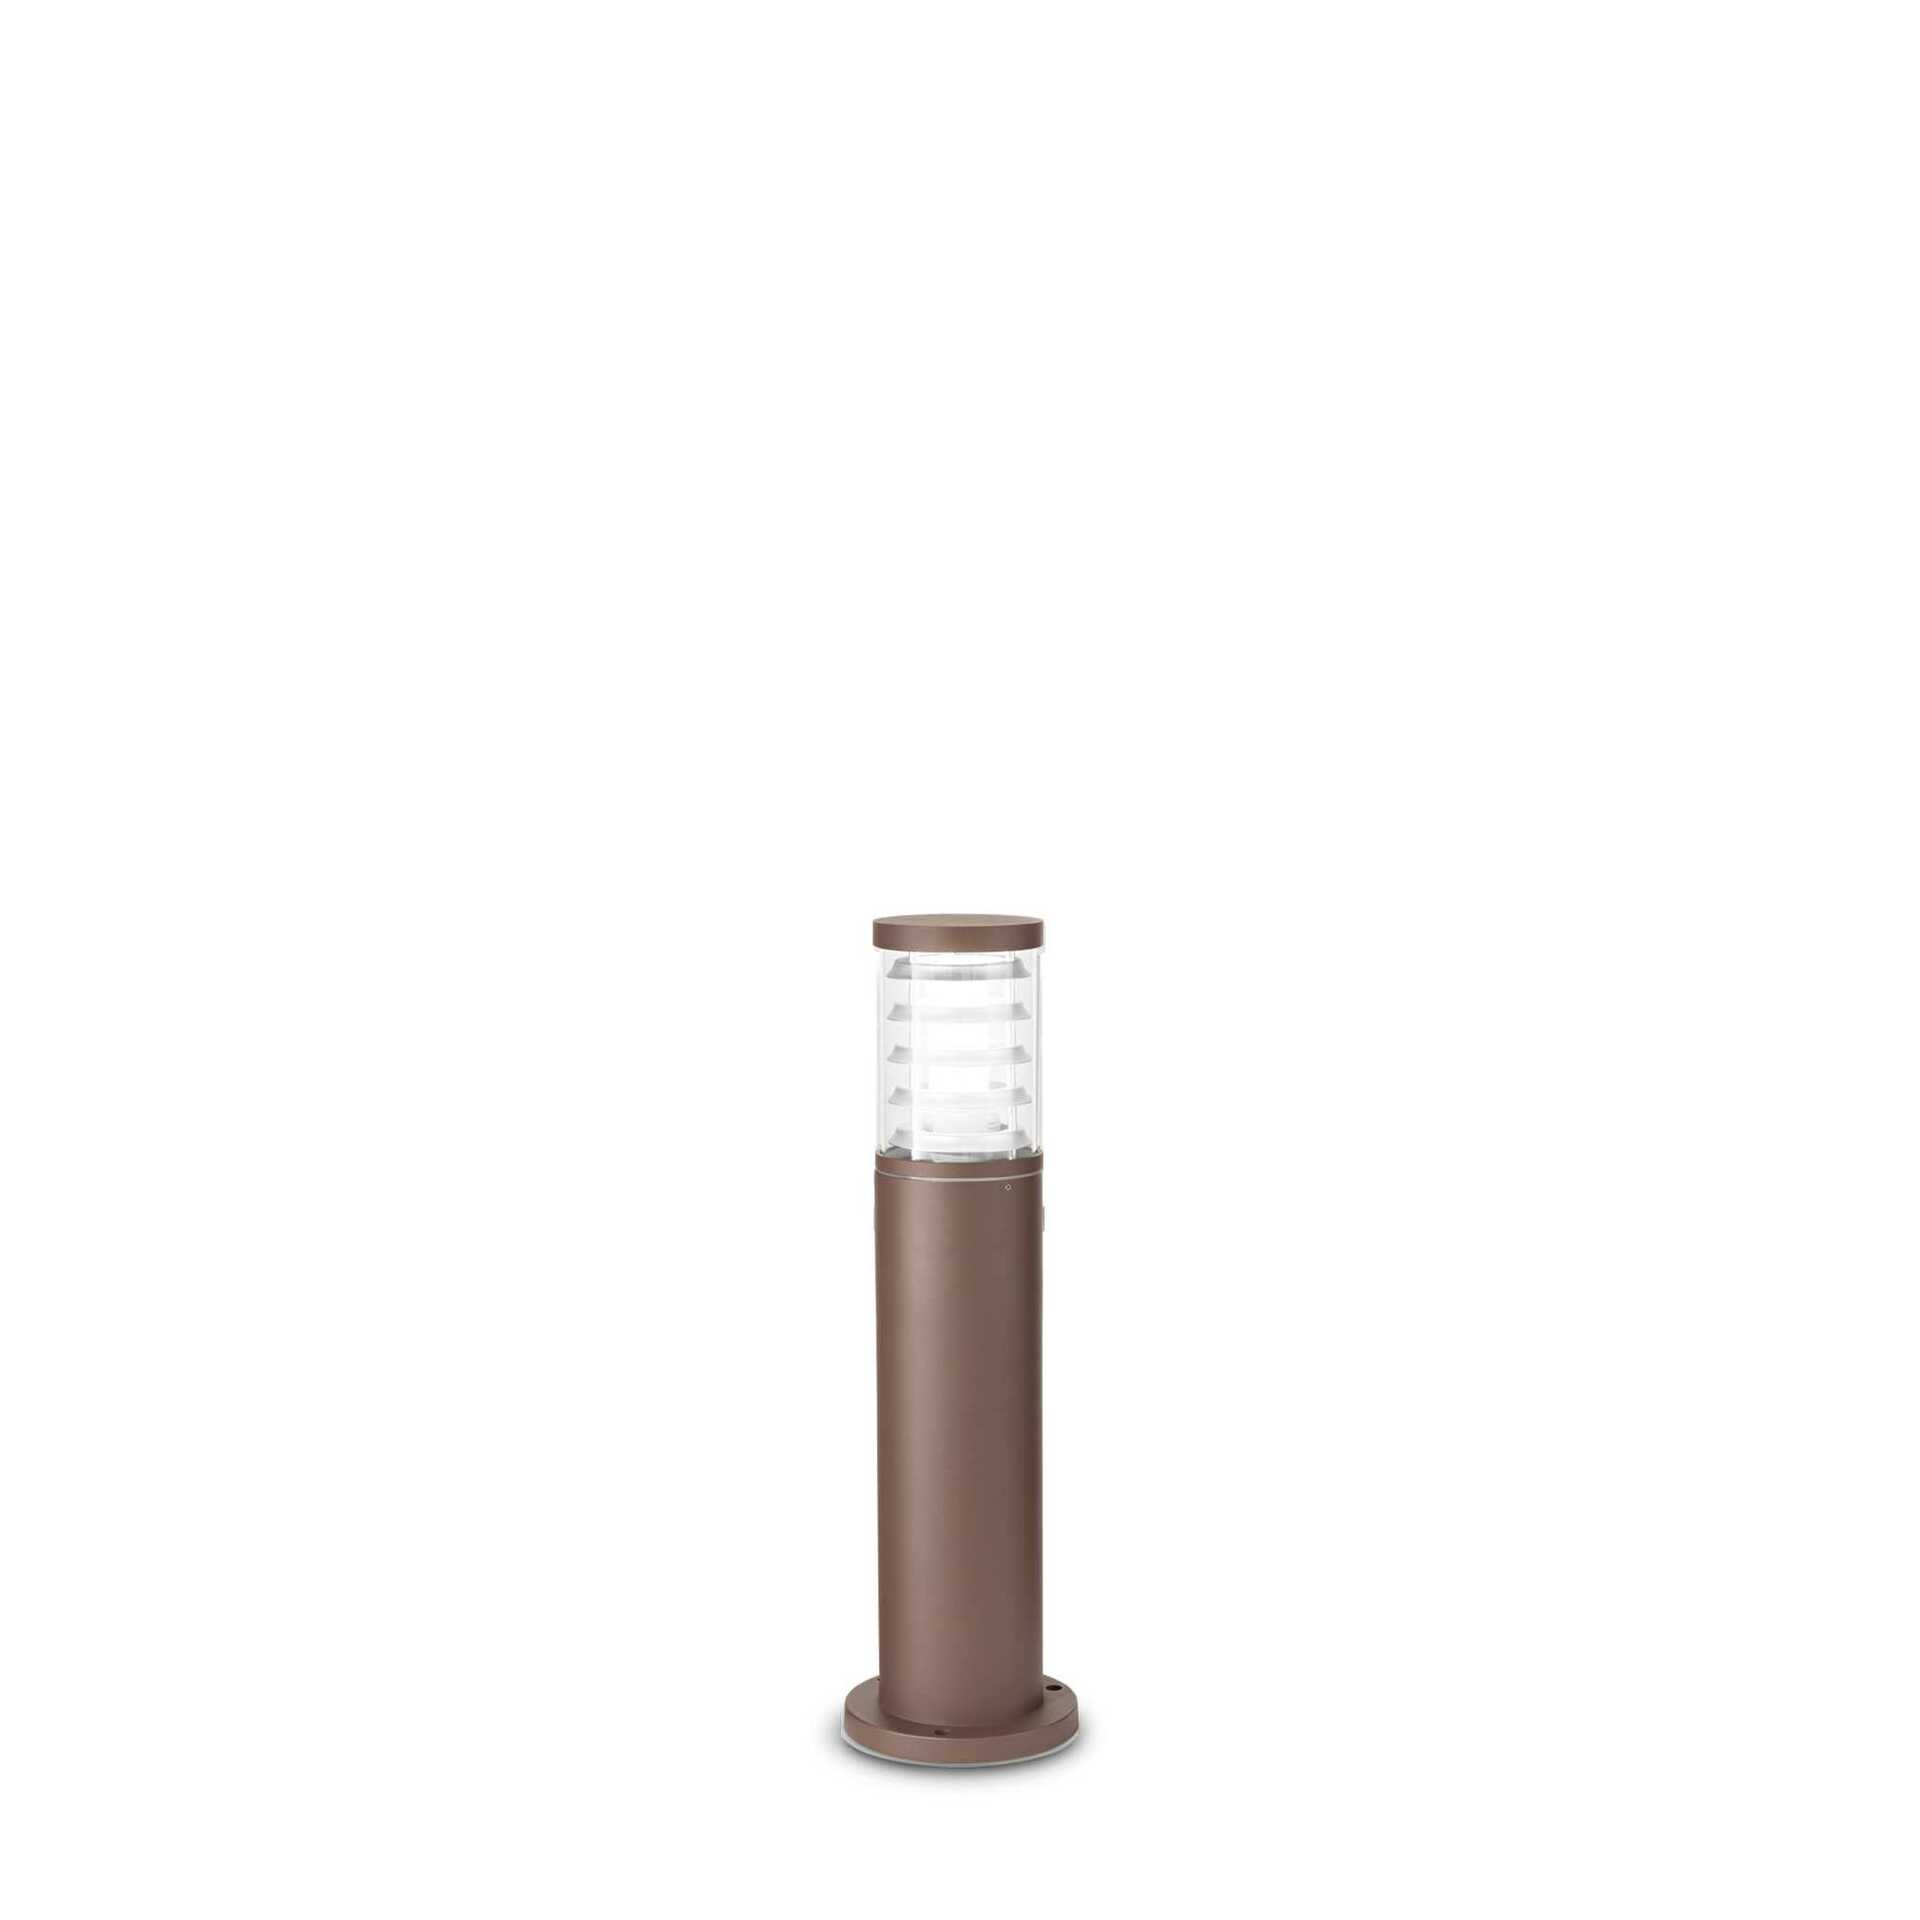 Venkovní sloupkové svítidlo Ideal Lux Tronco PT1 H40 Coffee 248271 E27 1x60W IP54 40,5cm hnědé